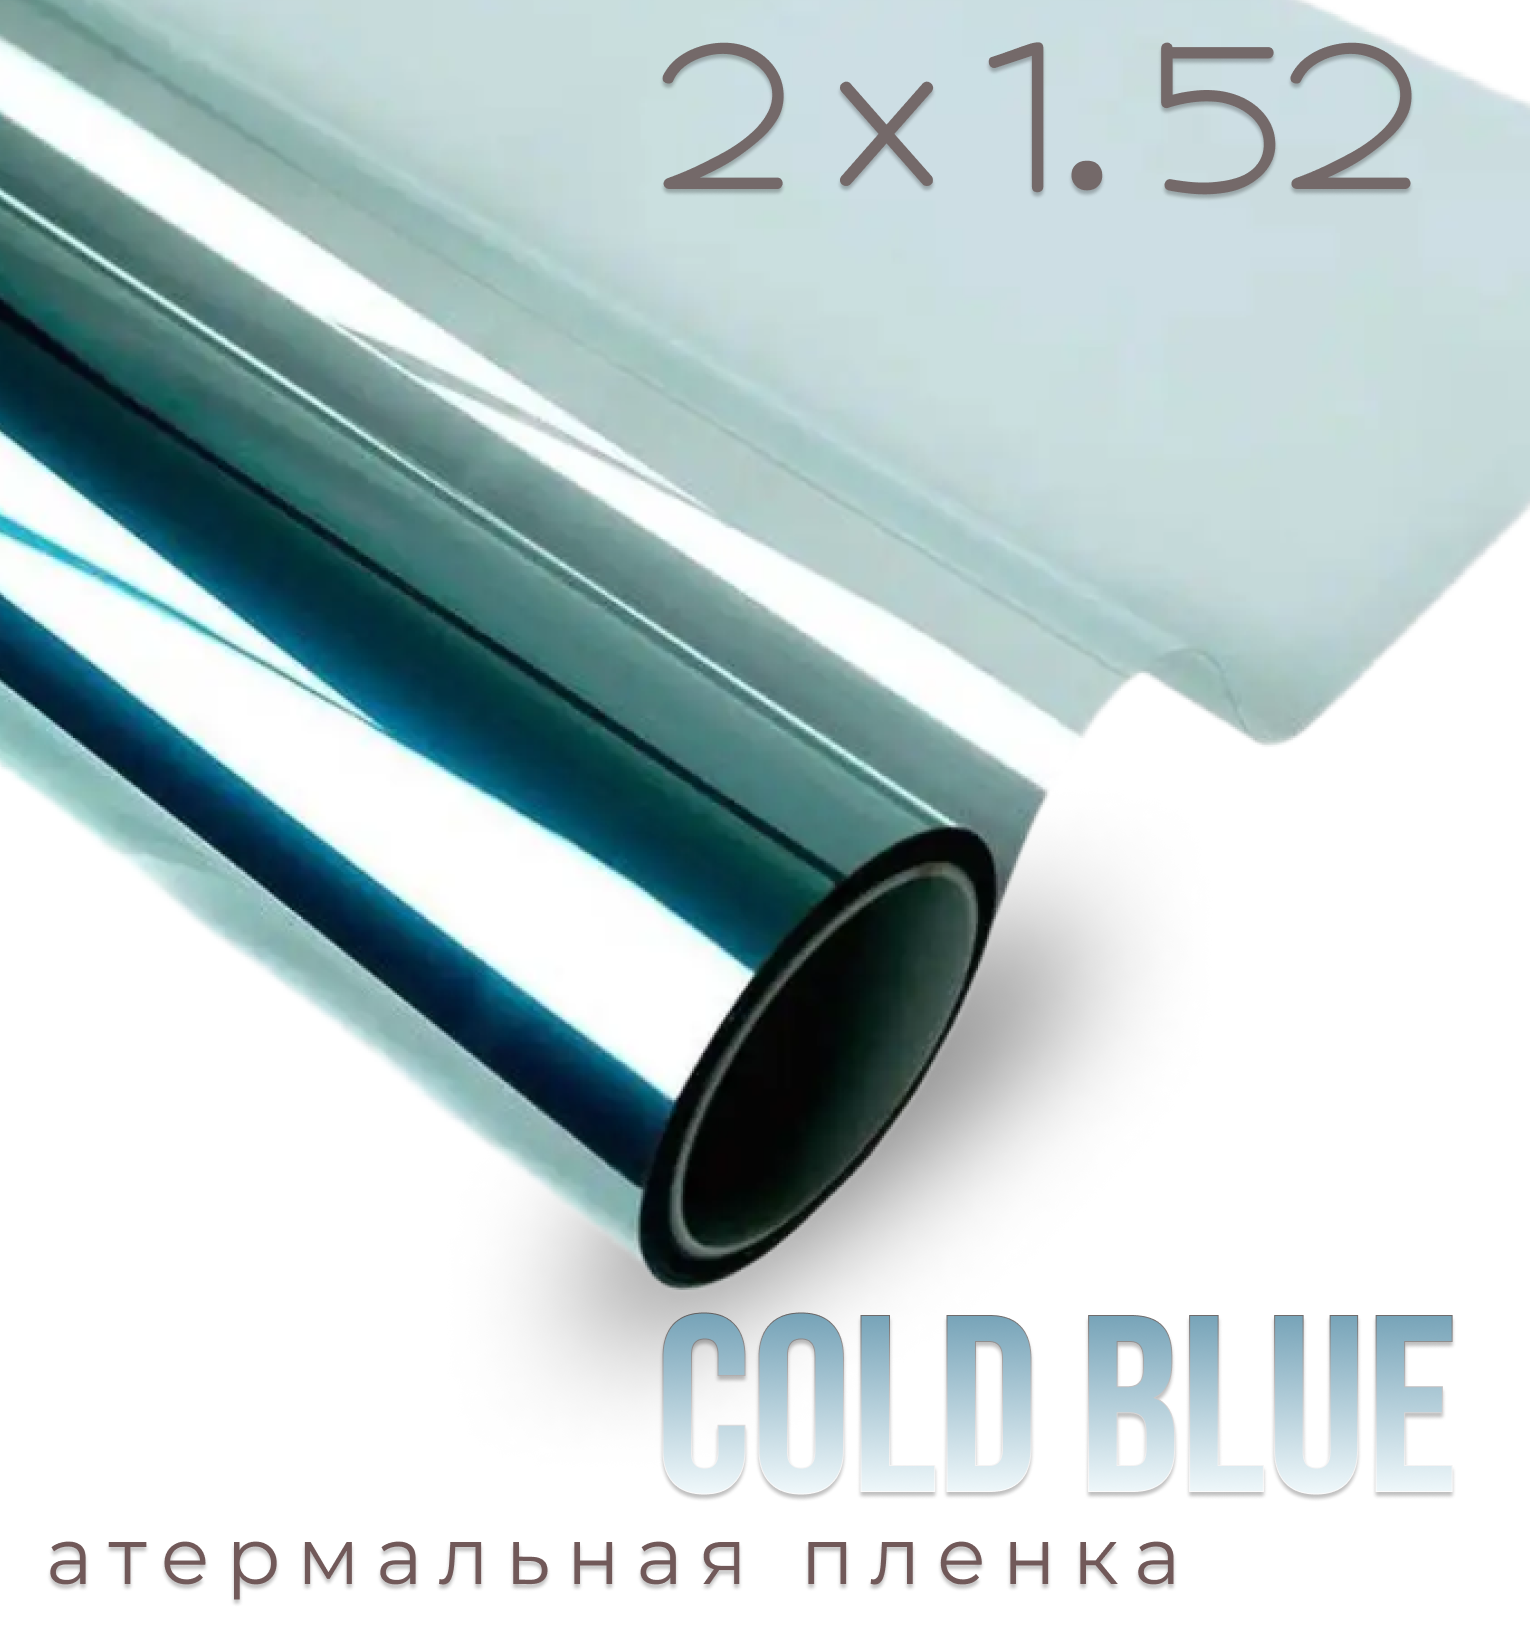 Пленка солнцезащитная атермальная на окна Cold Blue 7090, 1,52х2